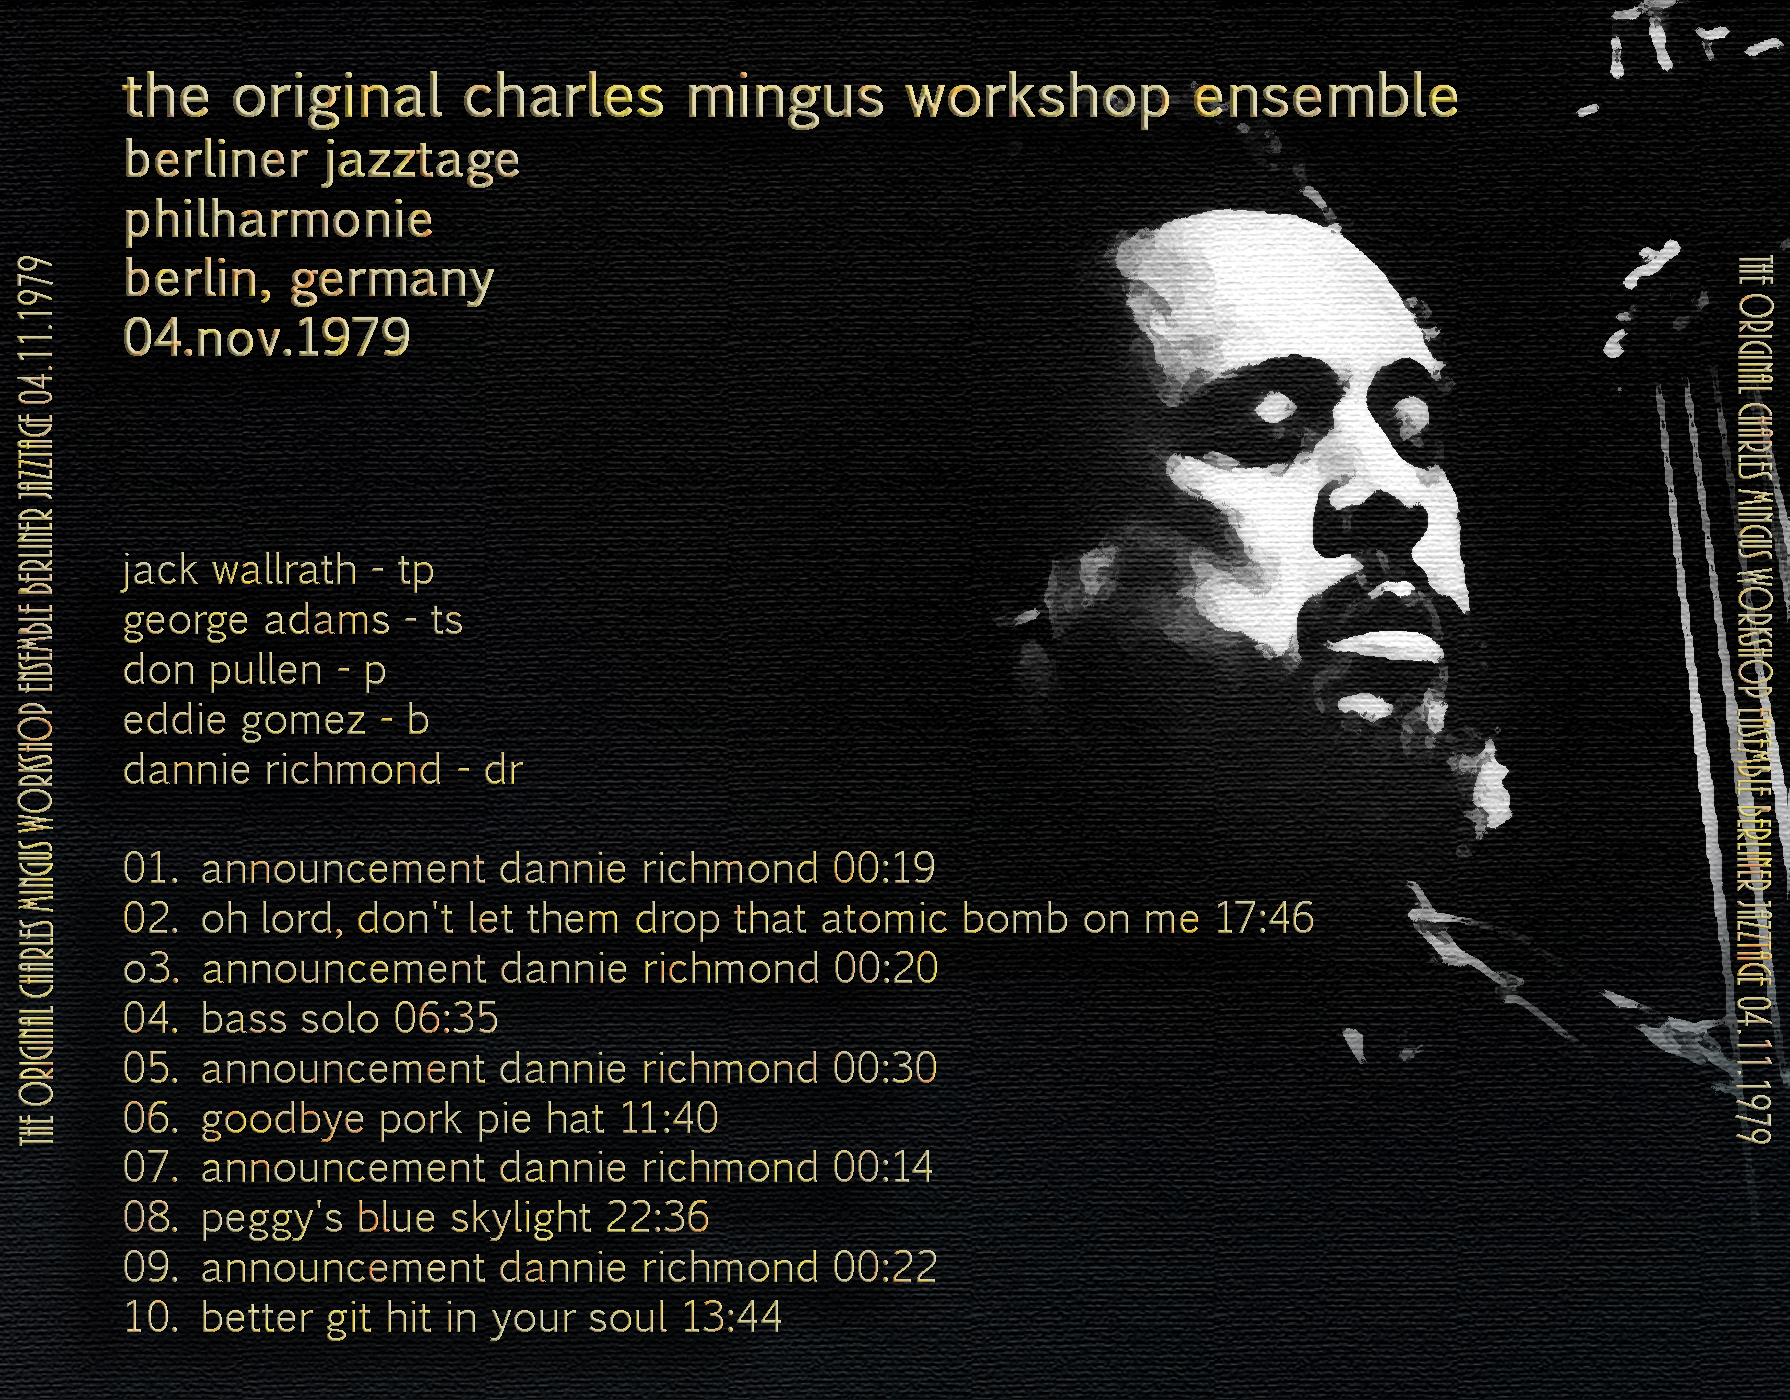 CharlesMingusWorkshopEnsemble1979-11-04PhilharmonieBerlinGermany (2).jpg